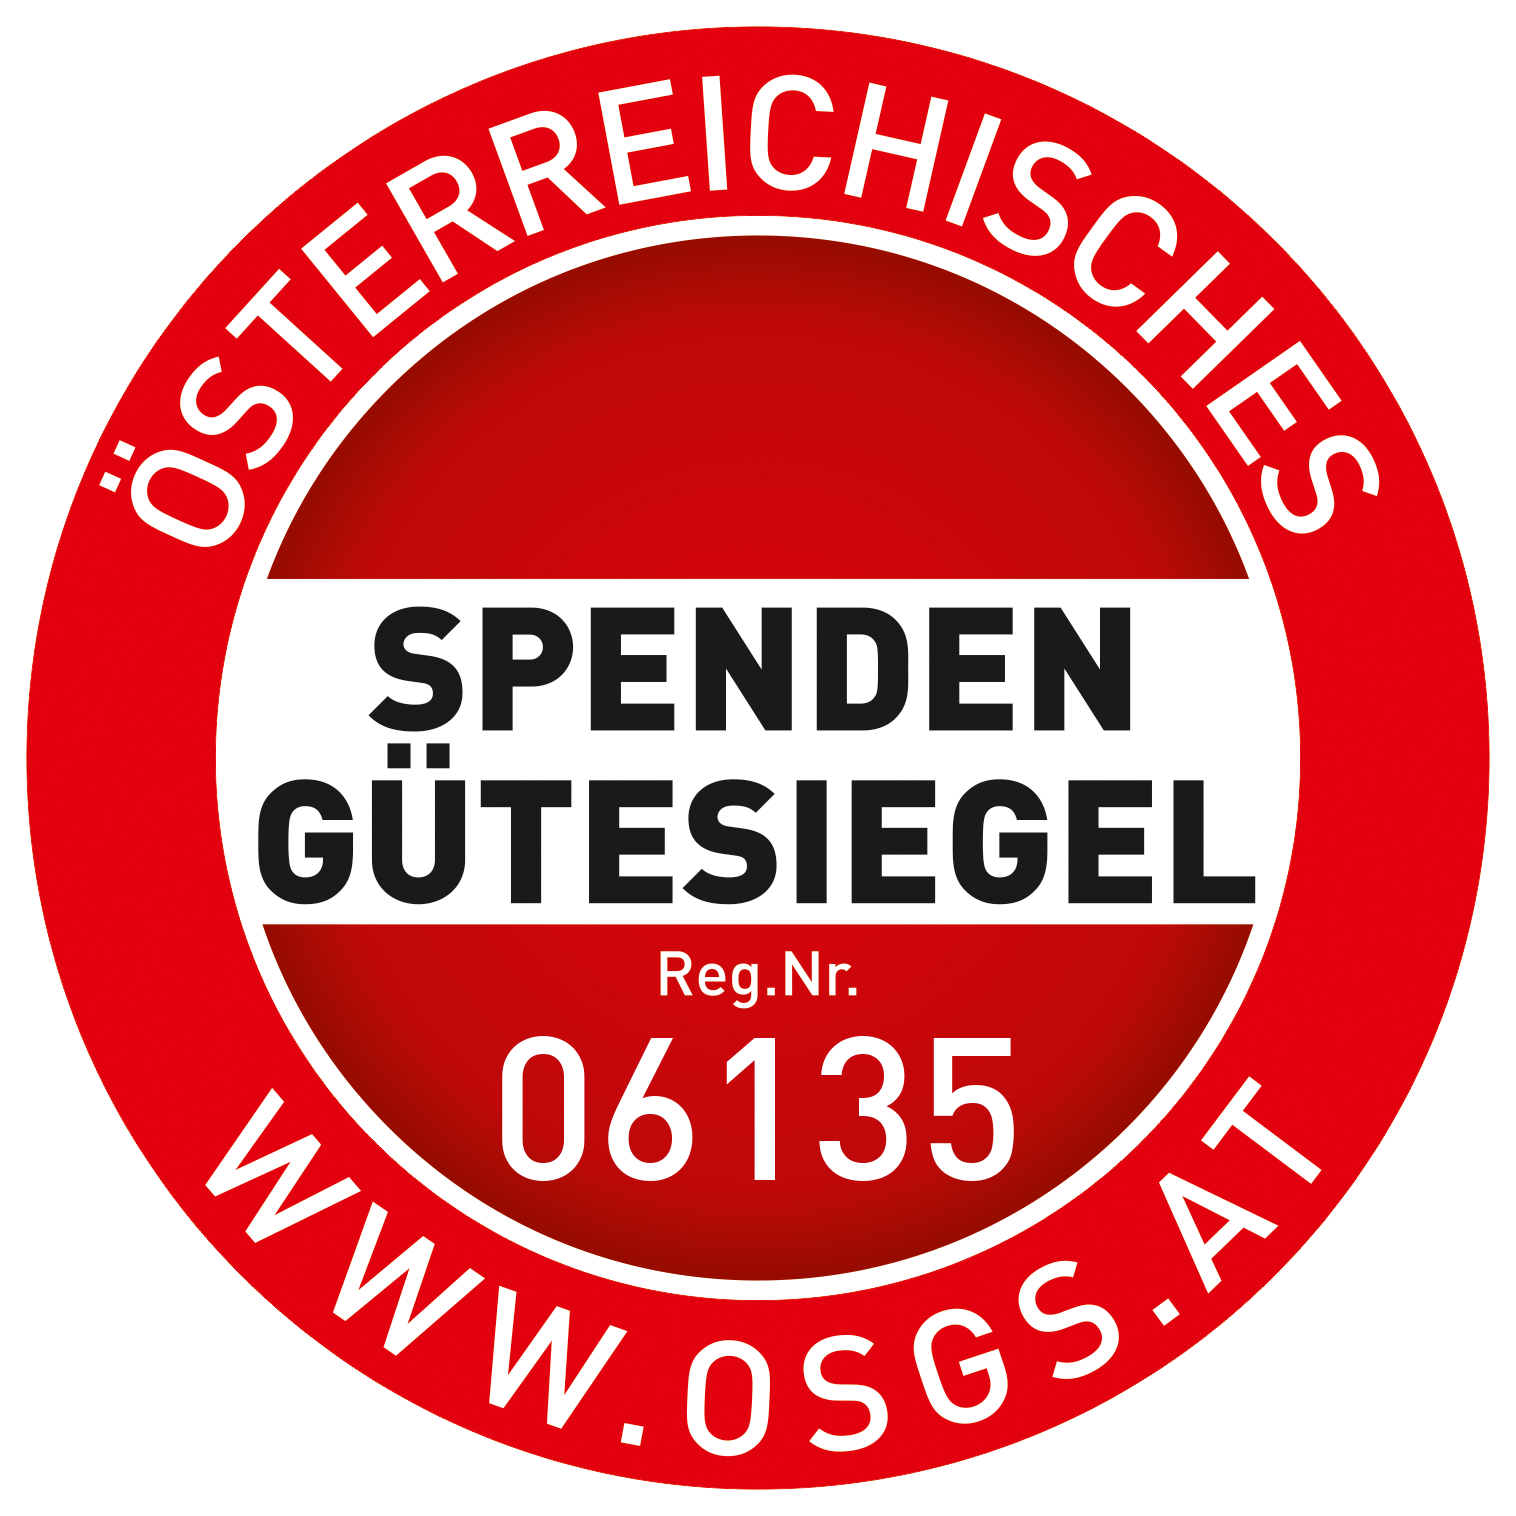 Spendegütesiegel Logo